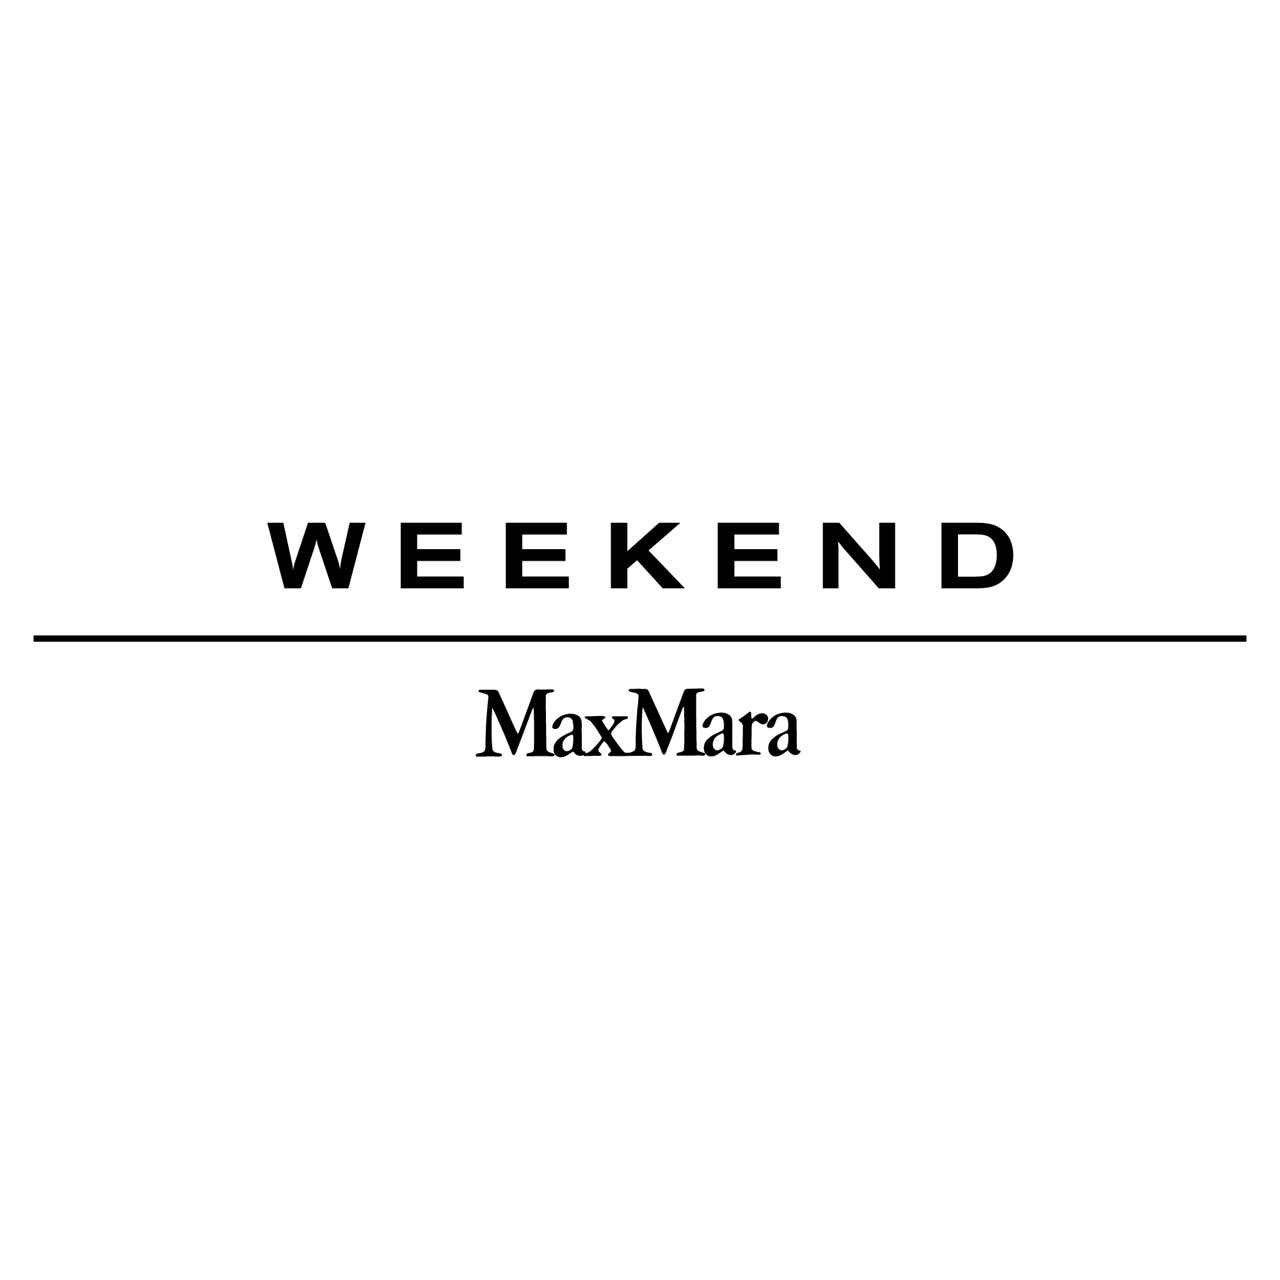 Weekend Max Mara Evian Les Bains